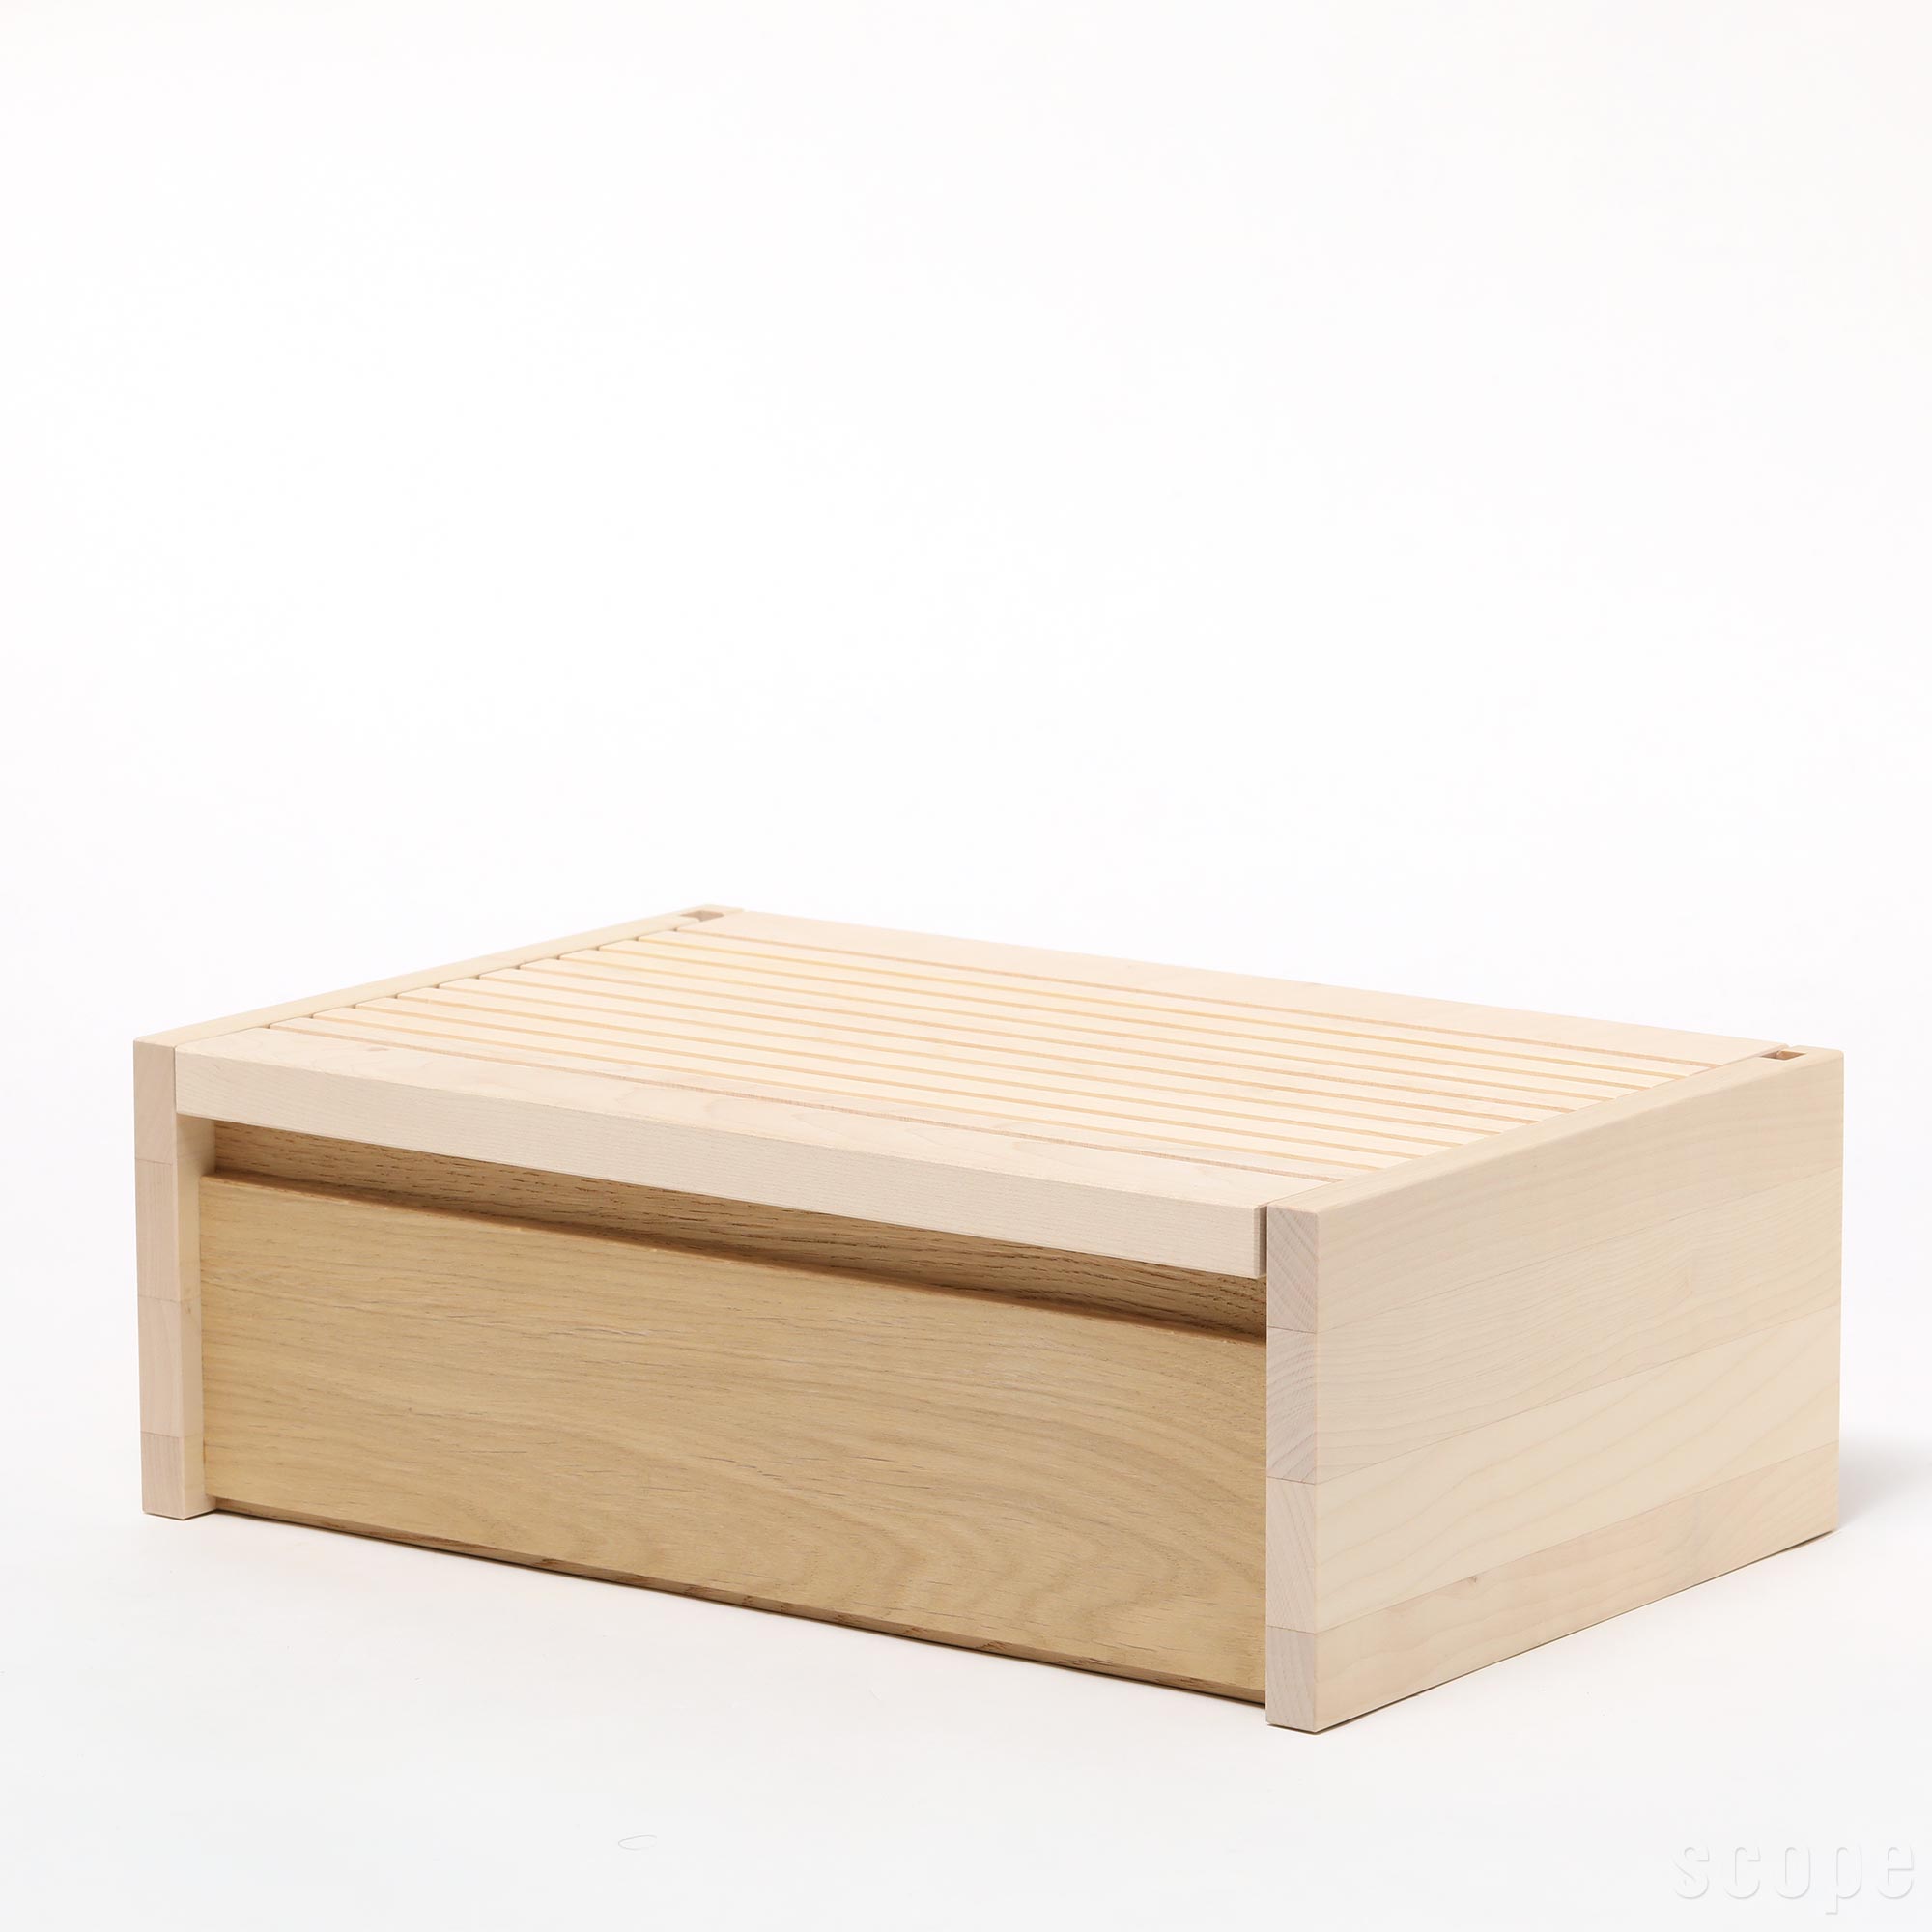 【0244】サイド バイ サイド / ブレッドボックス [SIDE BY SIDE / Bread Box]